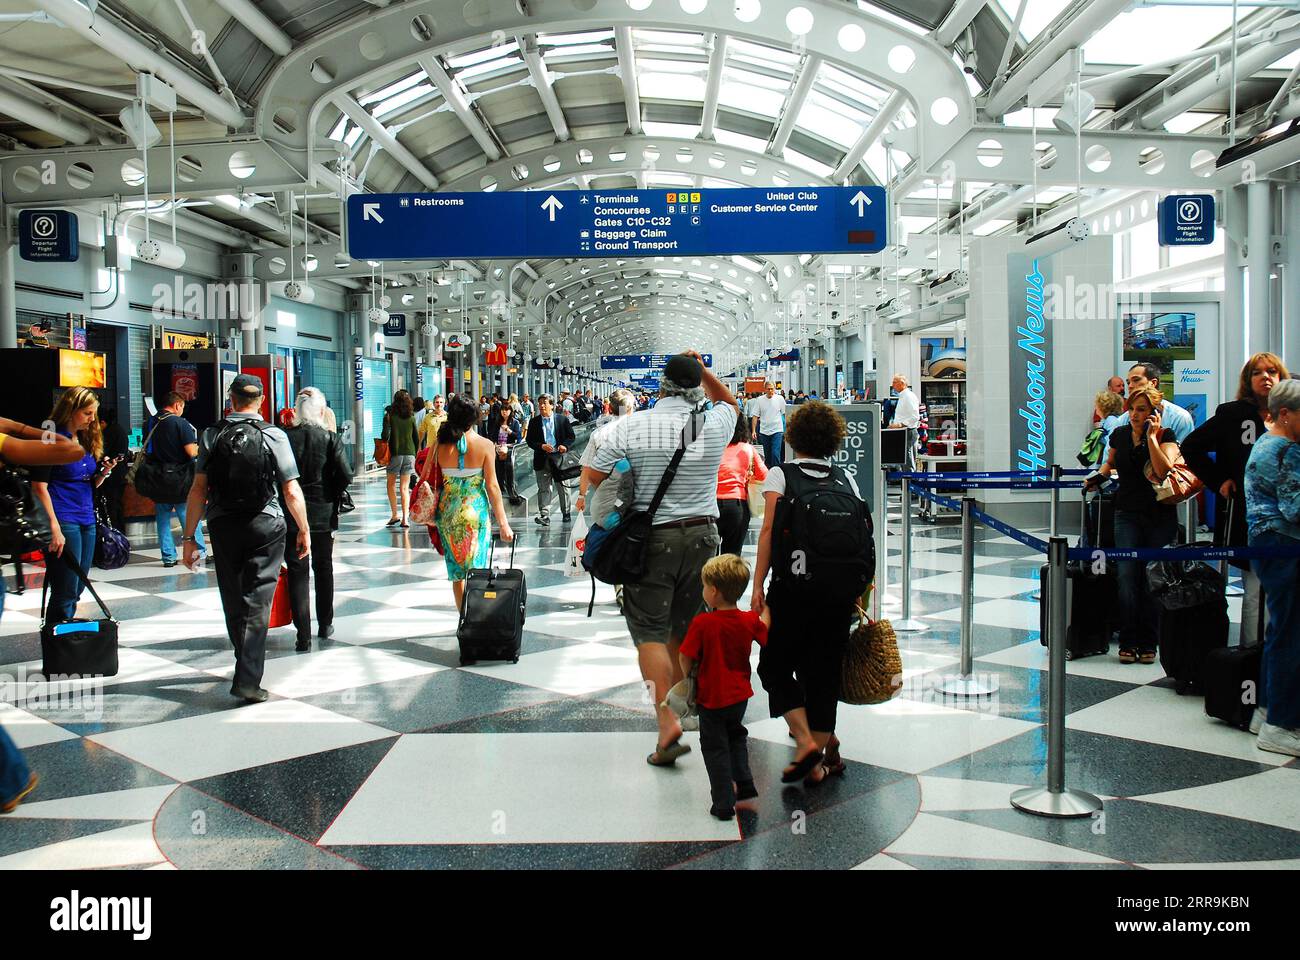 Une famille voyageant se précipite dans le terminal pour prendre leur vol alors qu'ils se promènent autour des autres voyageurs à l'aéroport international O'Hare de Chicago Banque D'Images